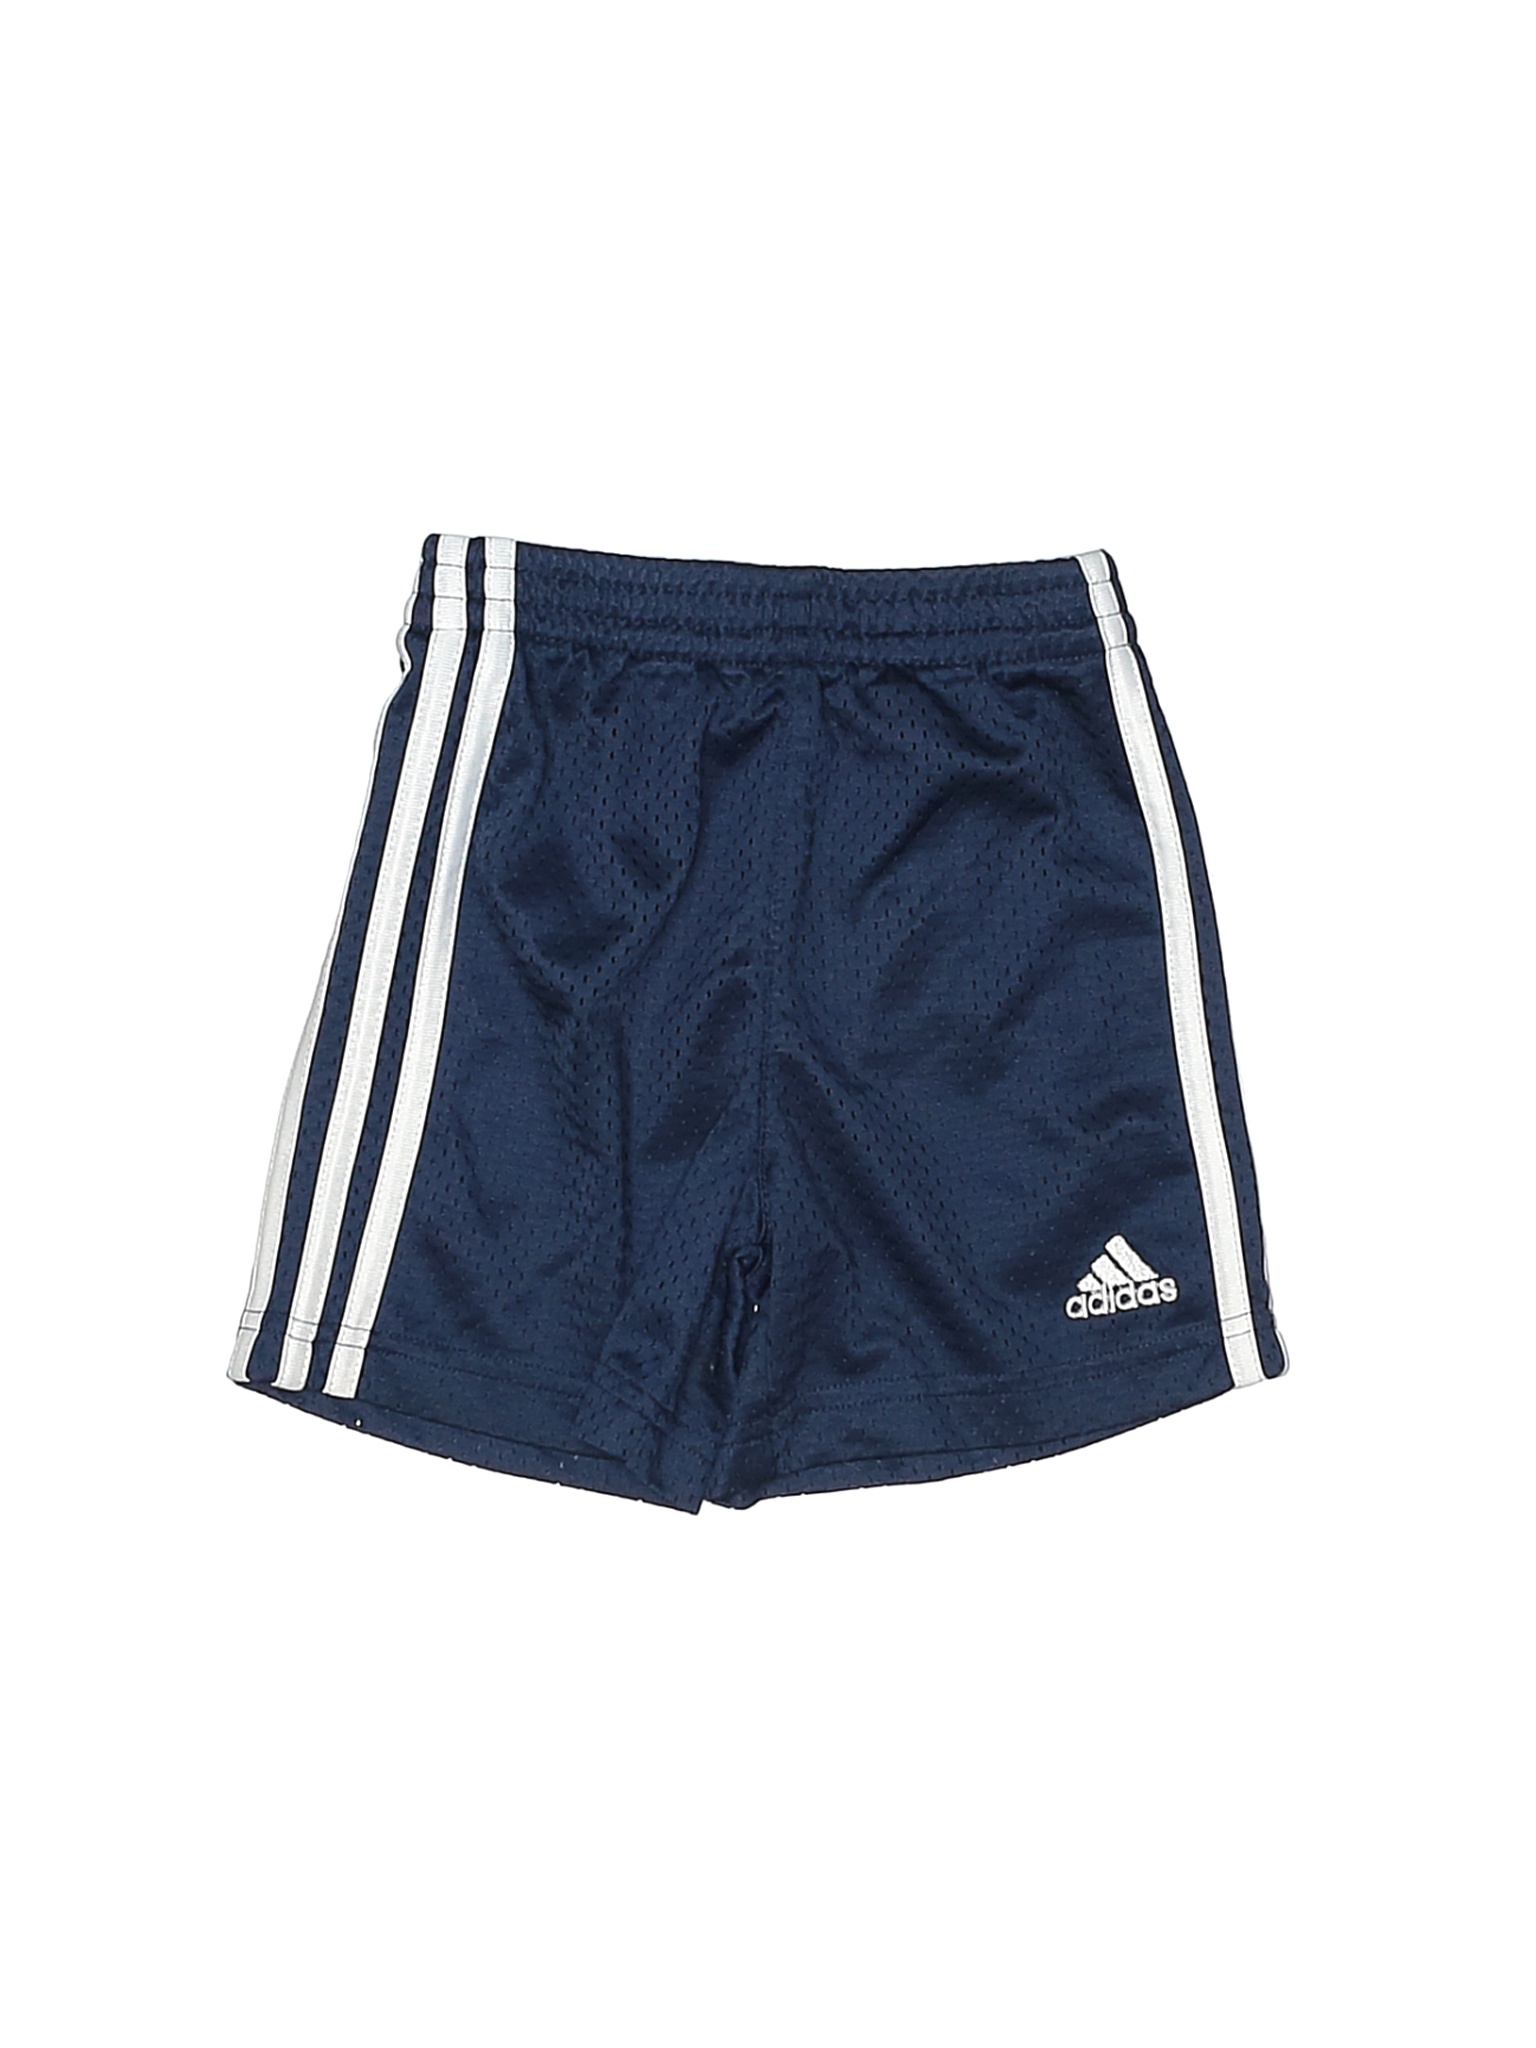 Adidas Boys Blue Athletic Shorts 2T | eBay